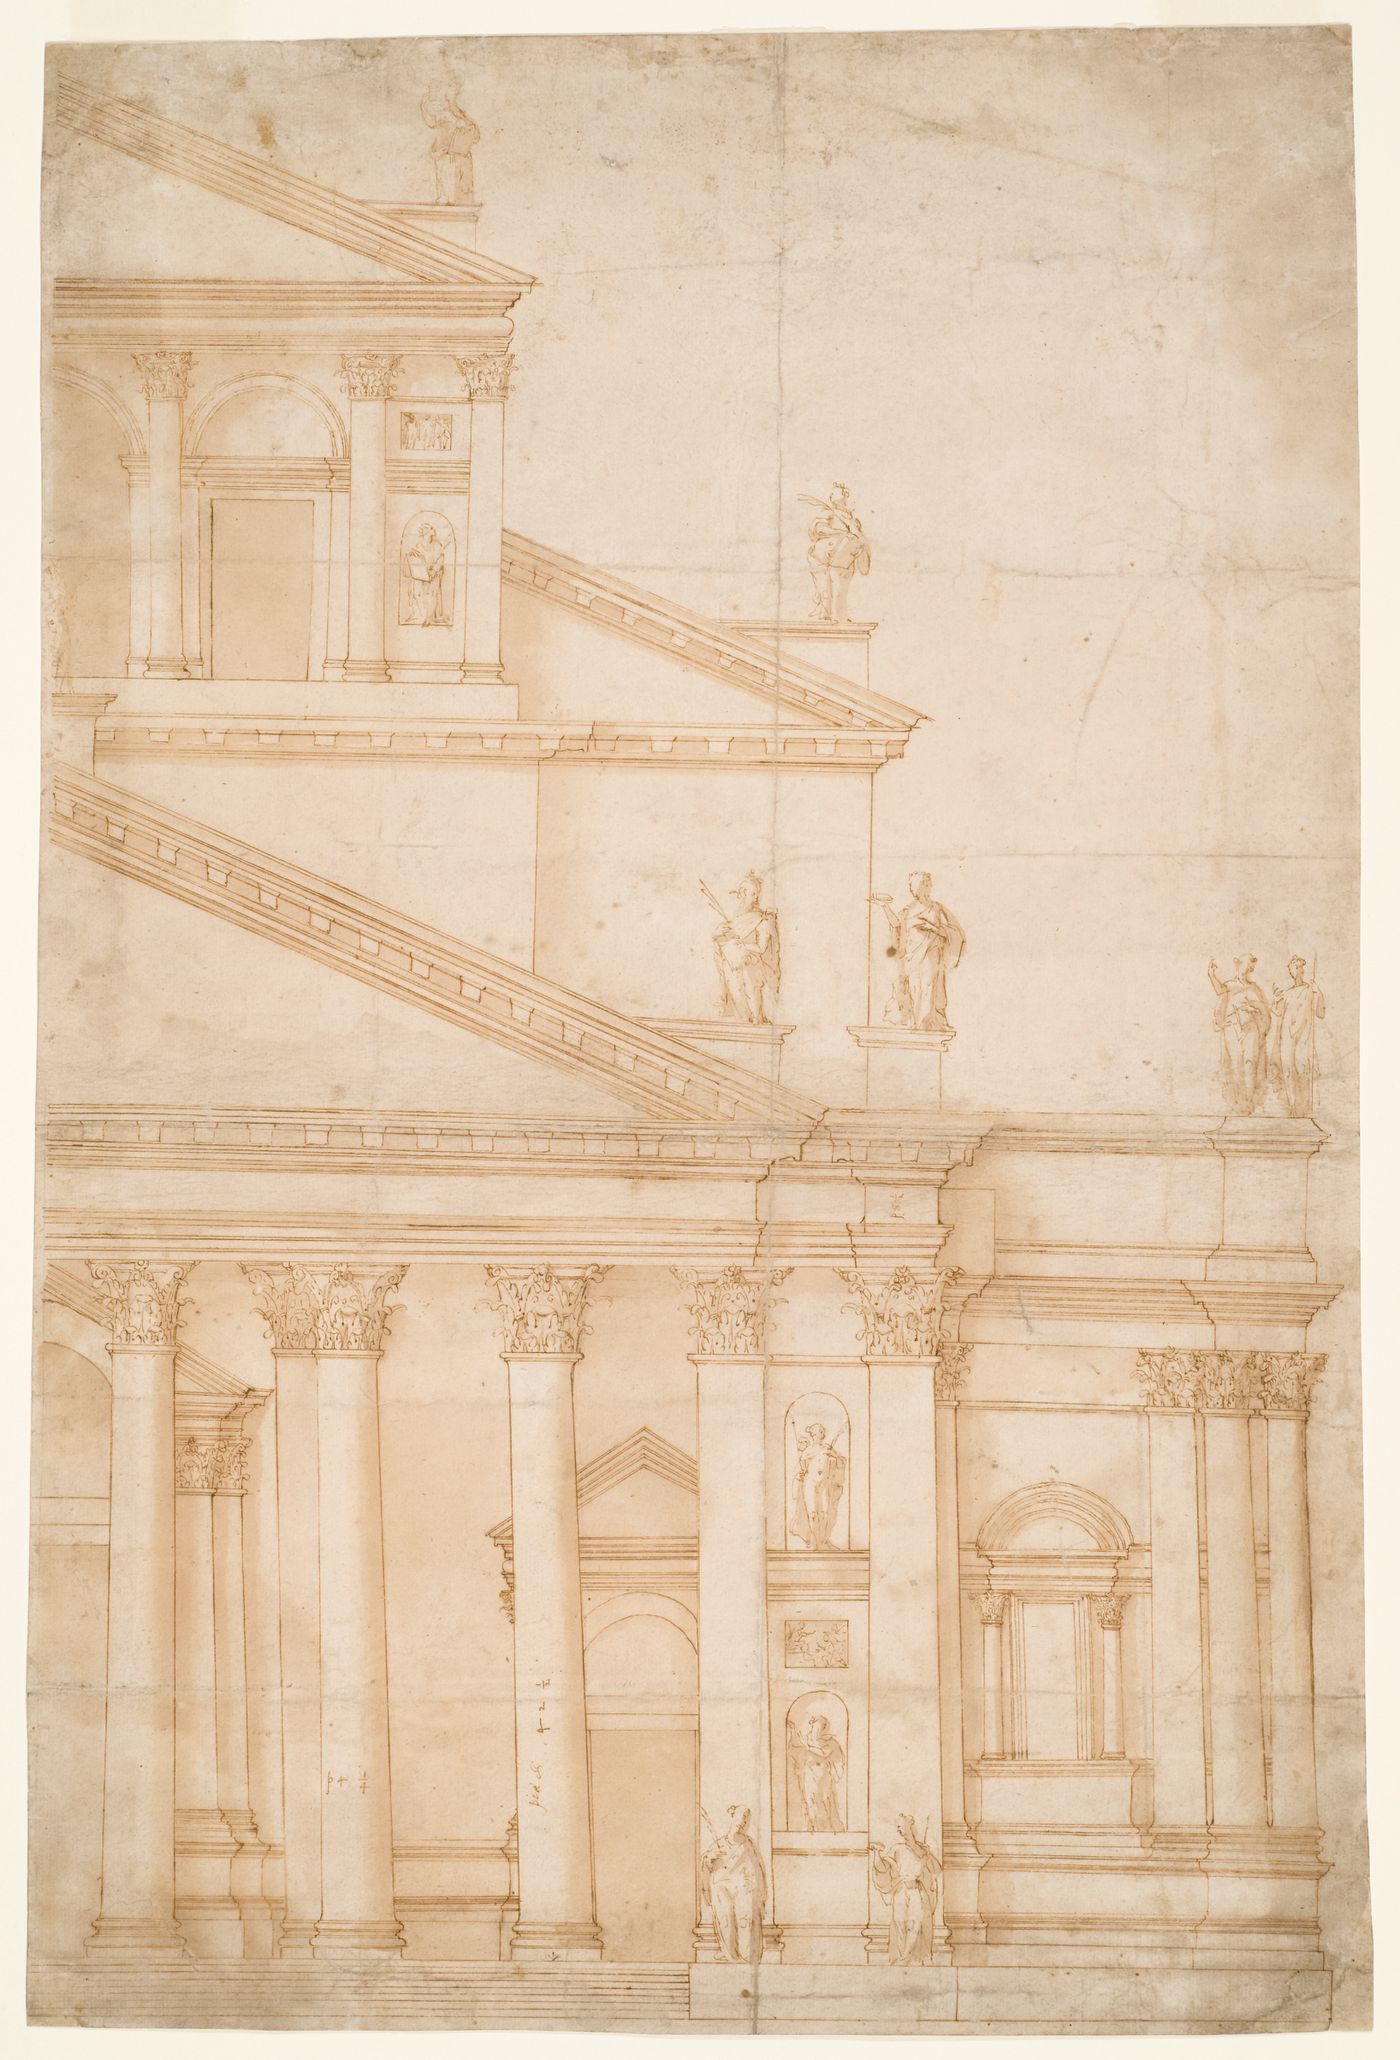 Proposed Elevation of Half of Façade for the Church of San Petronio, Bologna / Projet d'élévation partielle pour la façade de l'église San Petronio, à Bologne